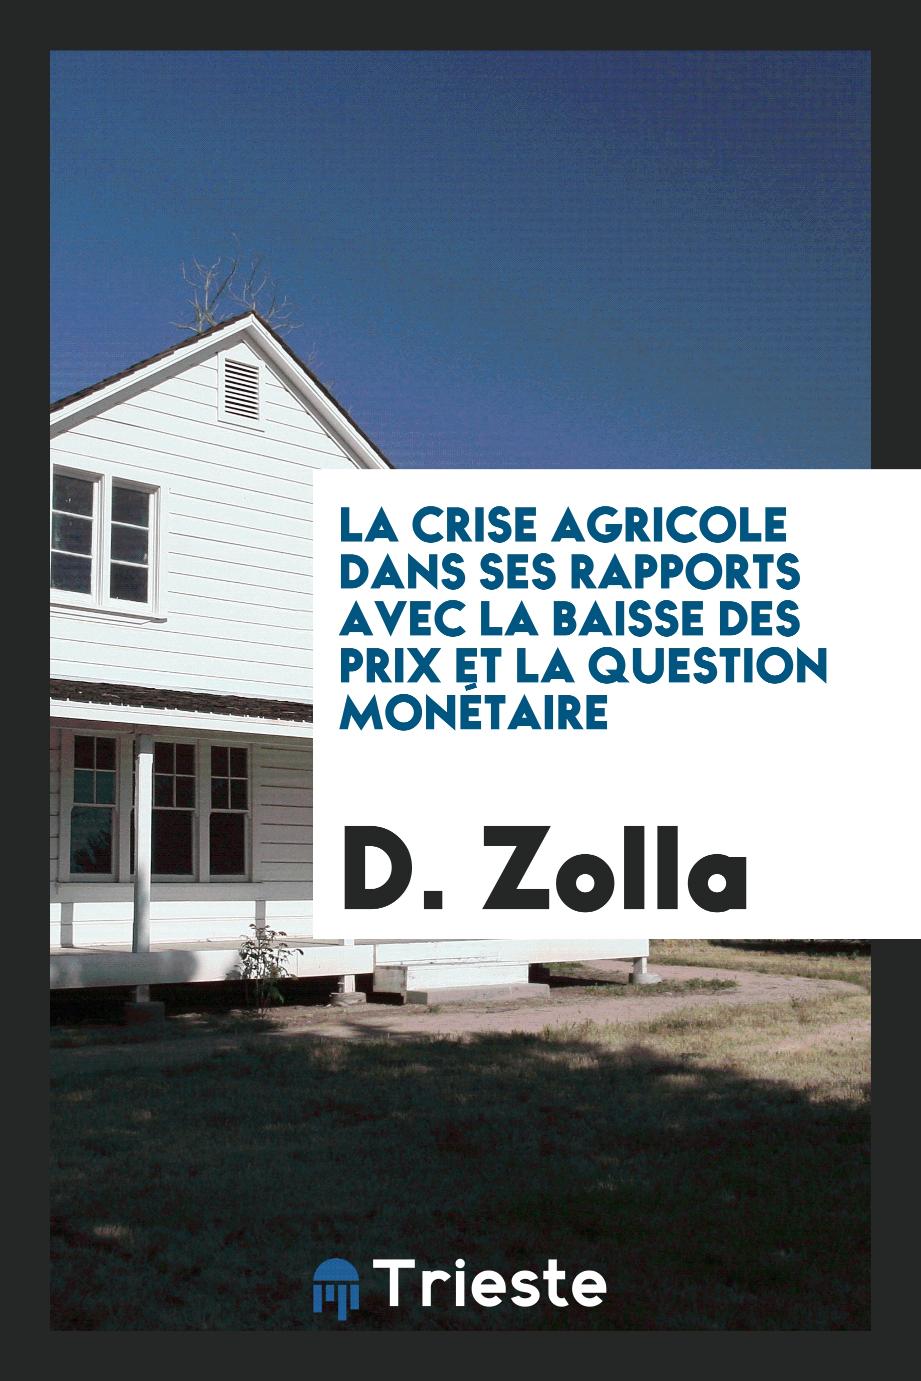 D. Zolla - La crise agricole dans ses rapports avec la baisse des prix et la question monétaire